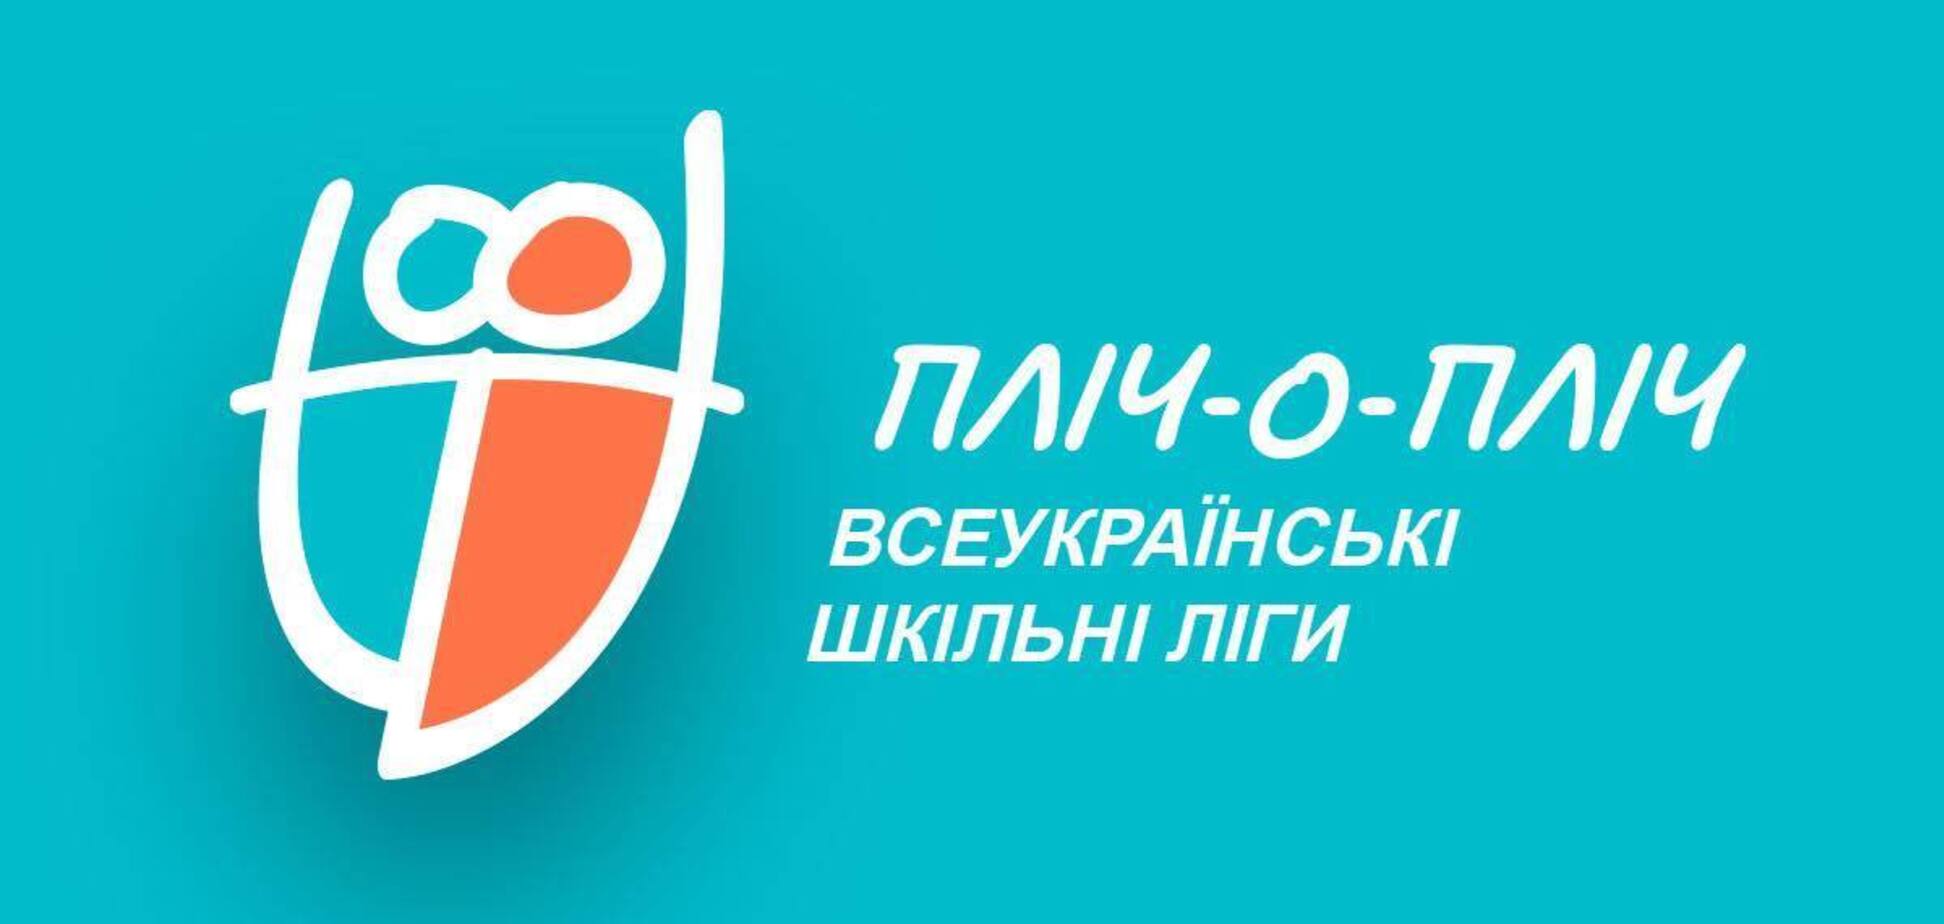 Стартует Всеукраинская школьная лига: в каких видах спорта, схема розыгрыша